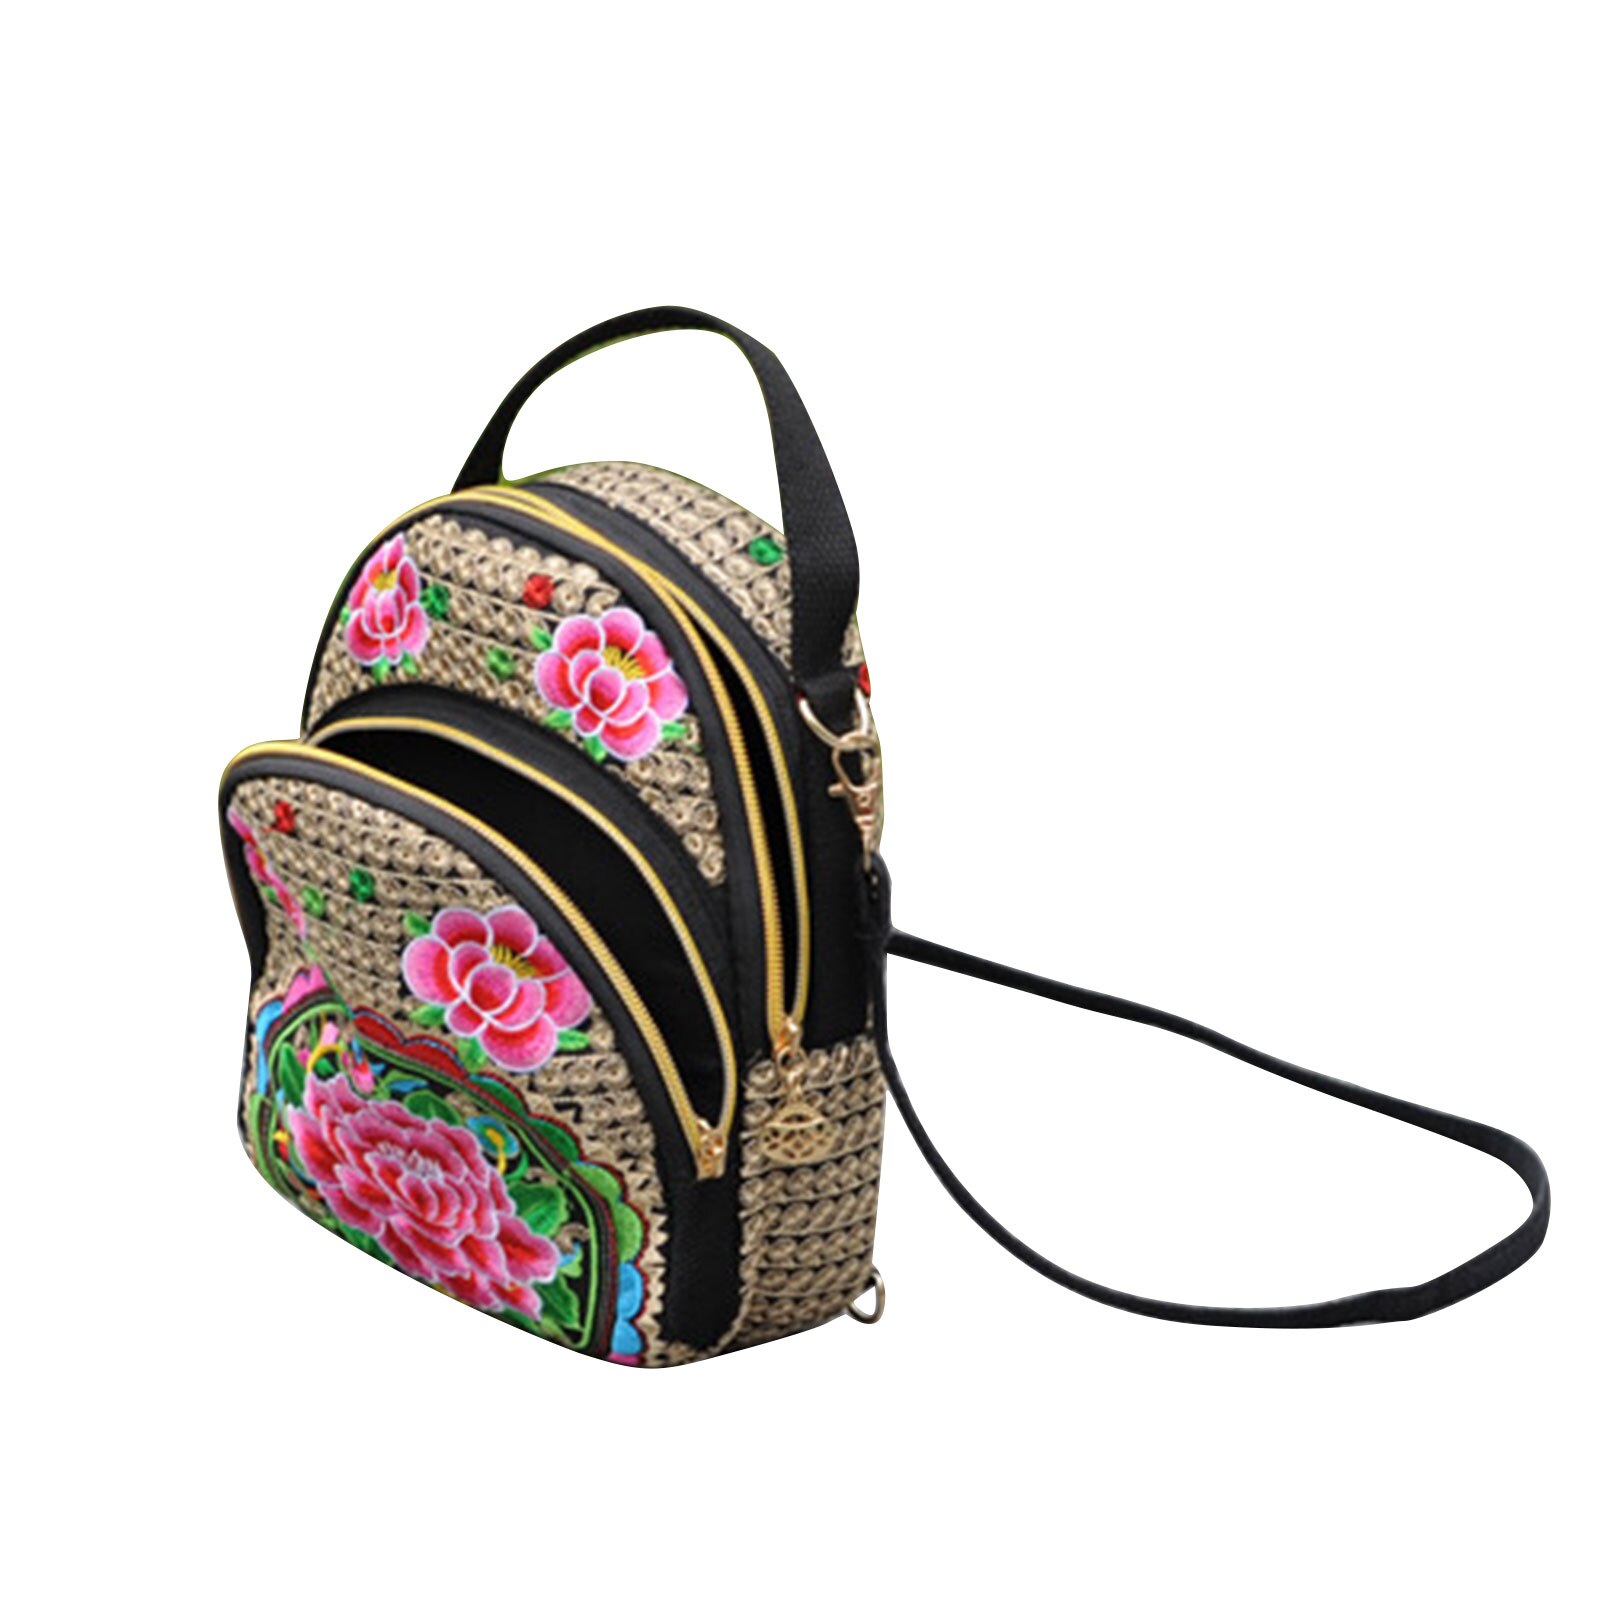 Kvinder pige vintage mini rygsæk lærred broderet blomst lynlås rejse skulder taske dagsæk til rejse shopping: -en